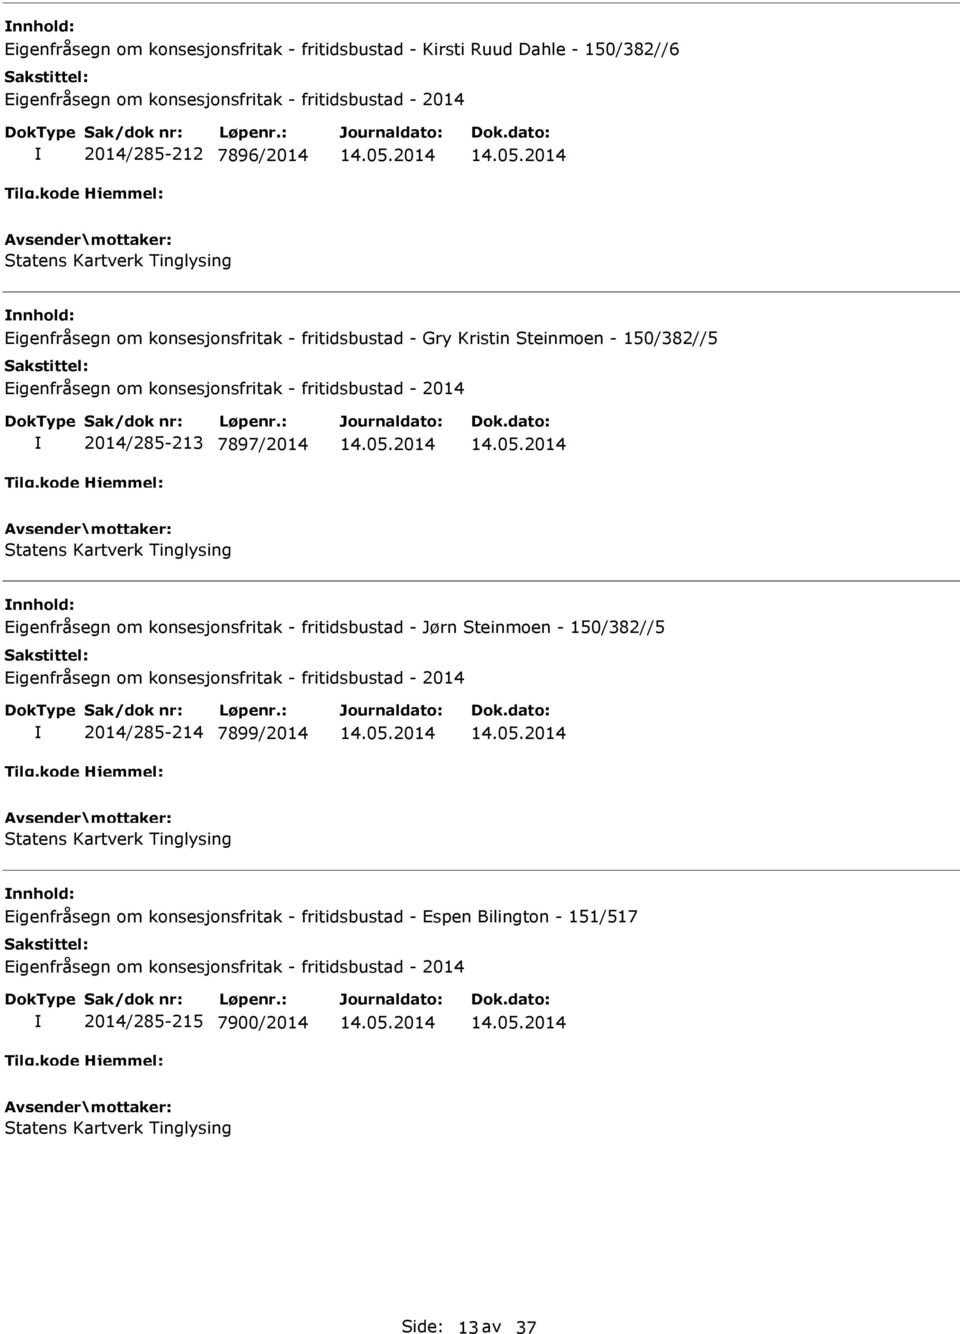 7897/2014 nnhold: Eigenfråsegn om konsesjonsfritak - fritidsbustad - Jørn Steinmoen - 150/382//5 2014/285-214